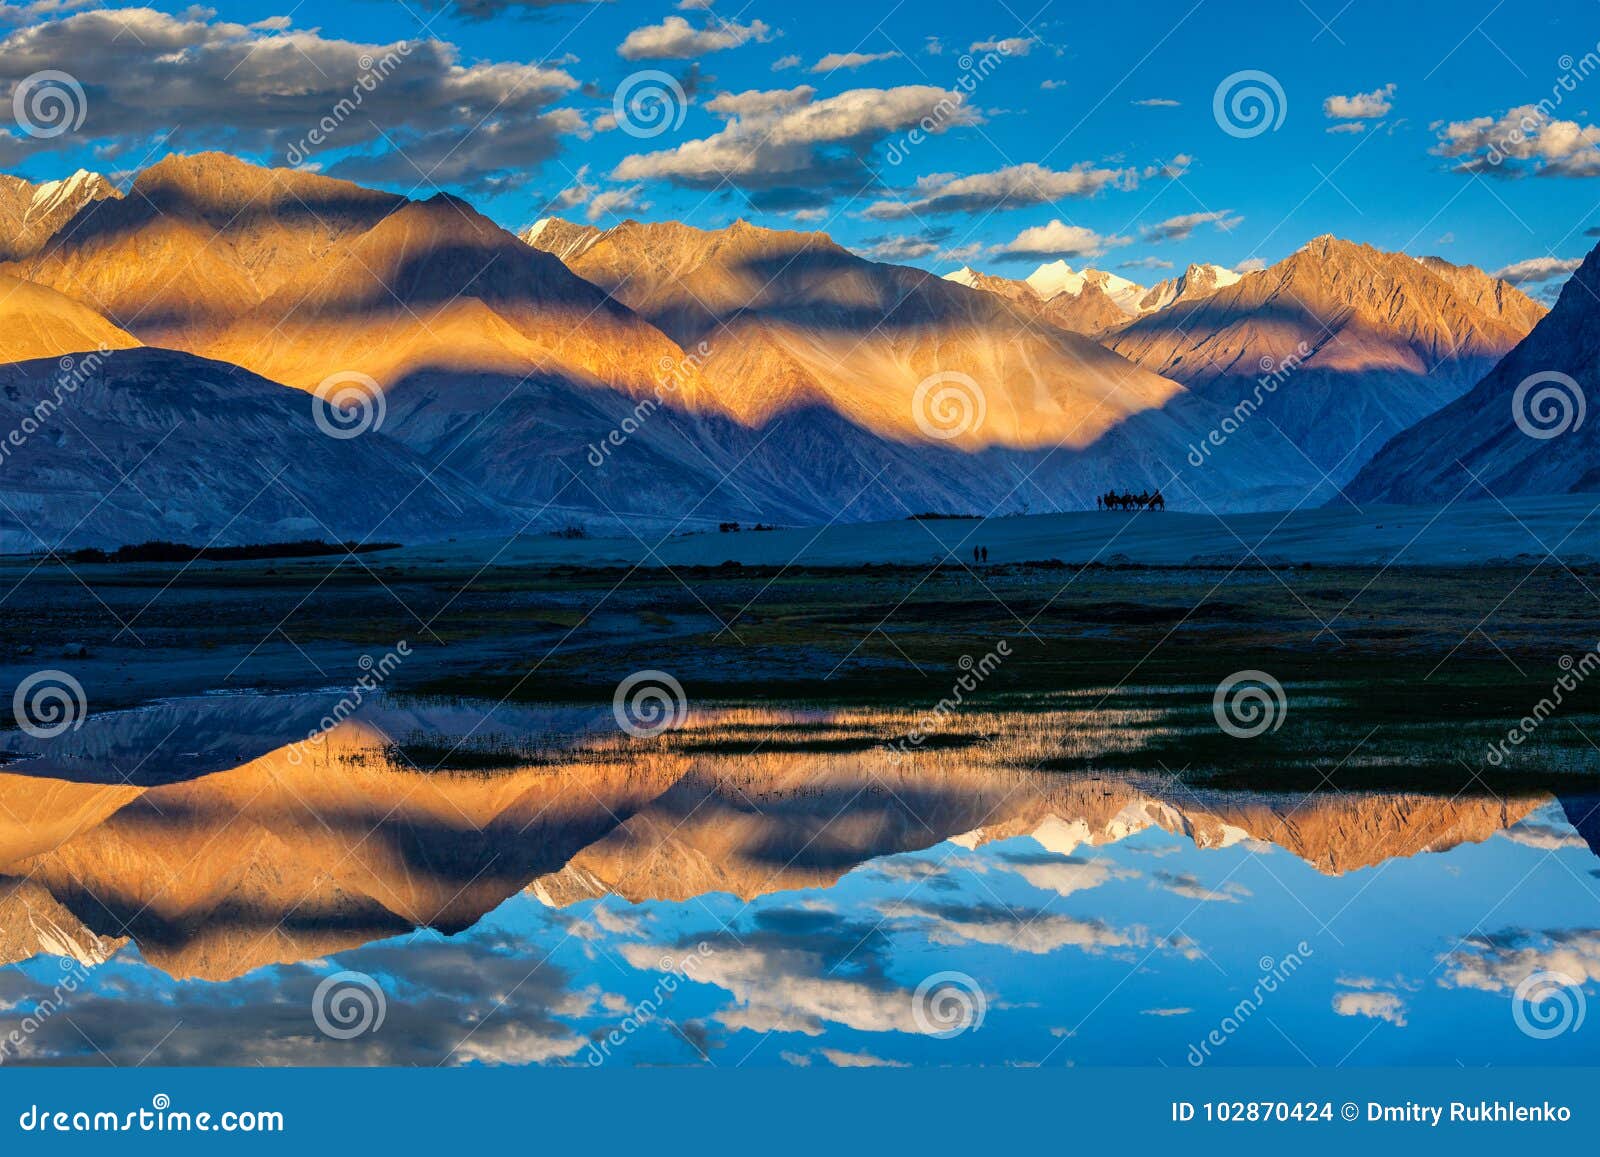 himalayas on sunset, nubra valley, ladakh, india